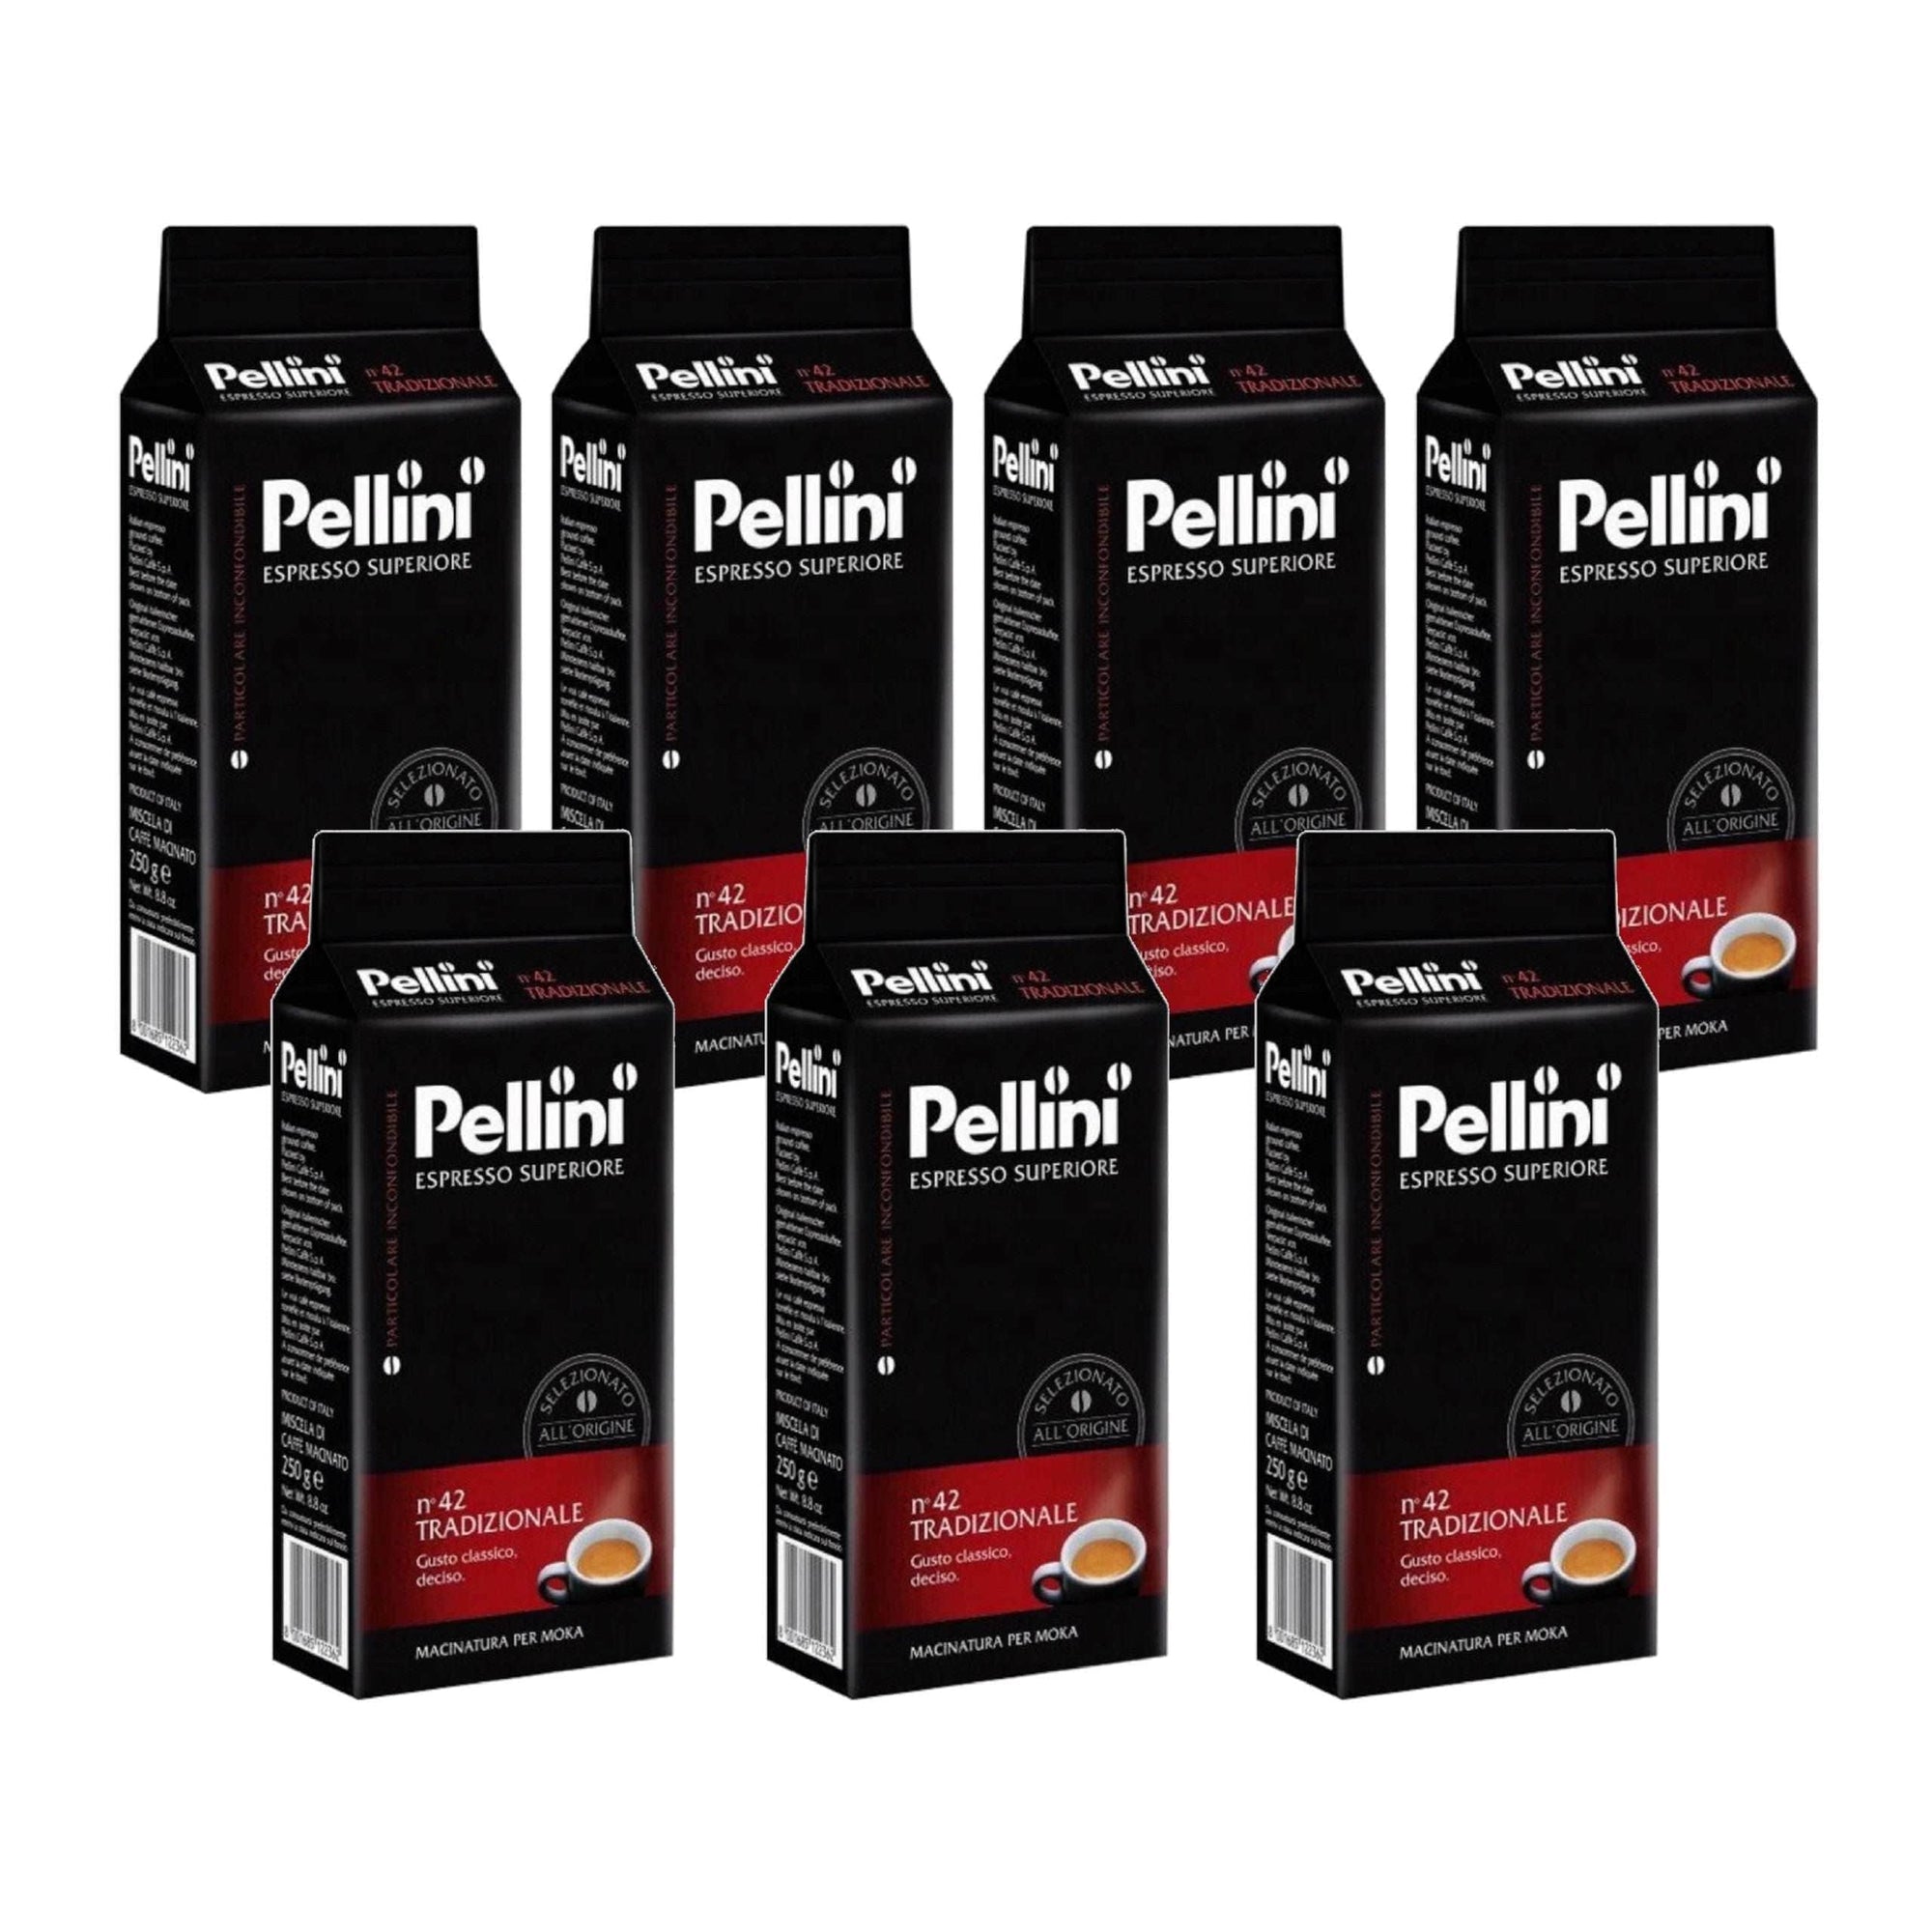 Produkt PELLINI Kawa mielona 7x Kawa mielona PELLINI espresso n'42 Tradizionale 250g K_S00151_7